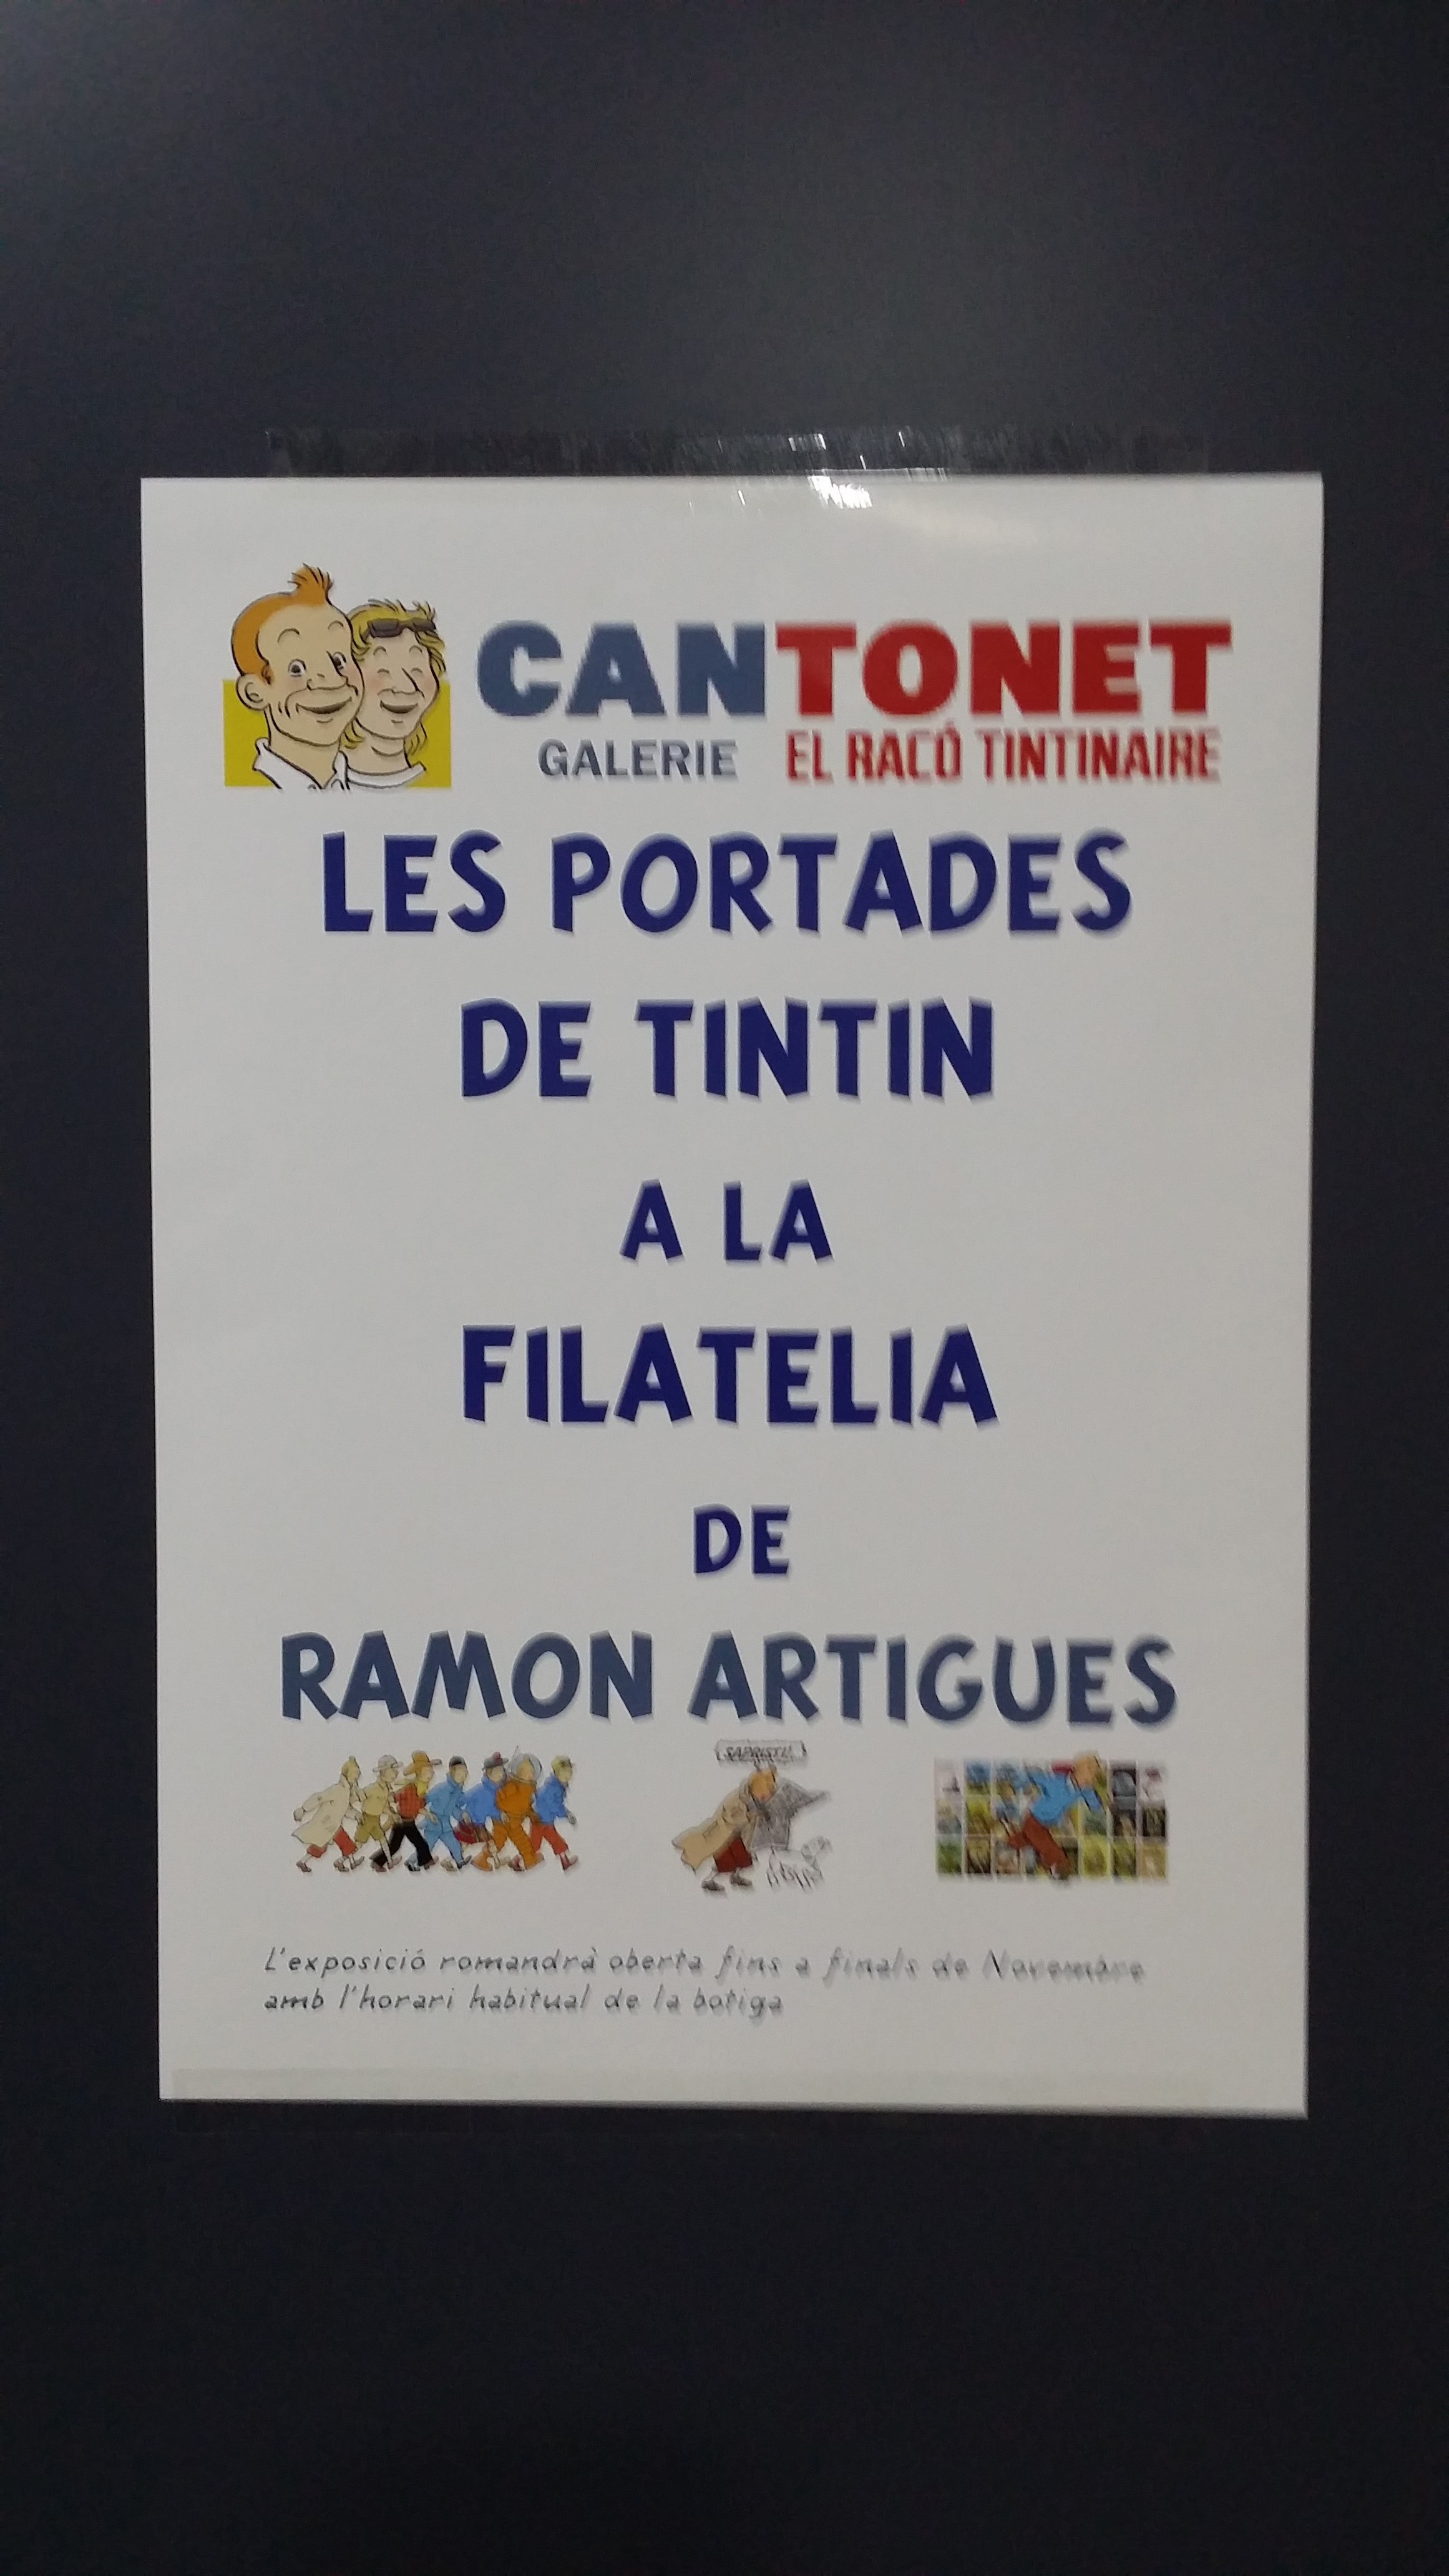 Exposició filatélica a Cantonet